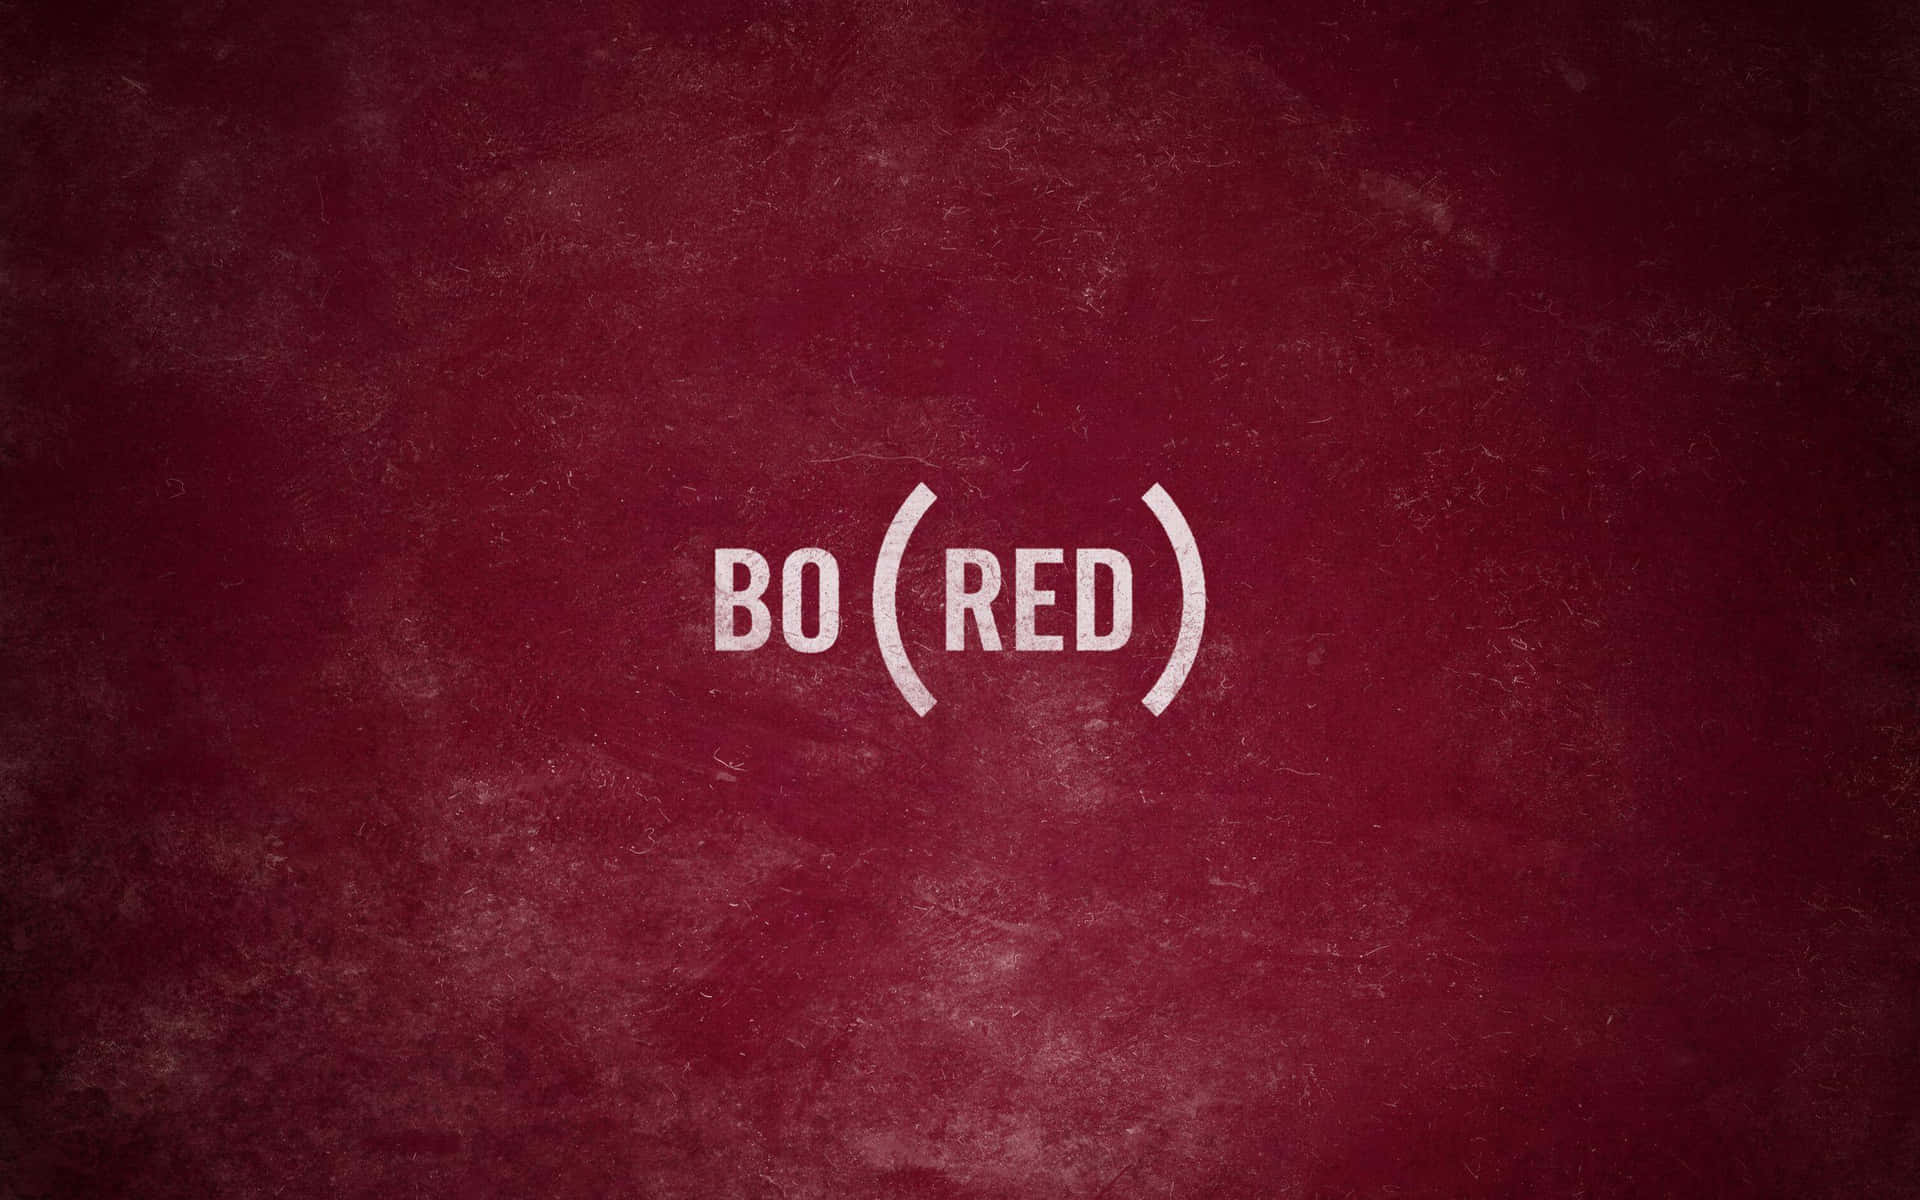 Bo(red) Wallpaper